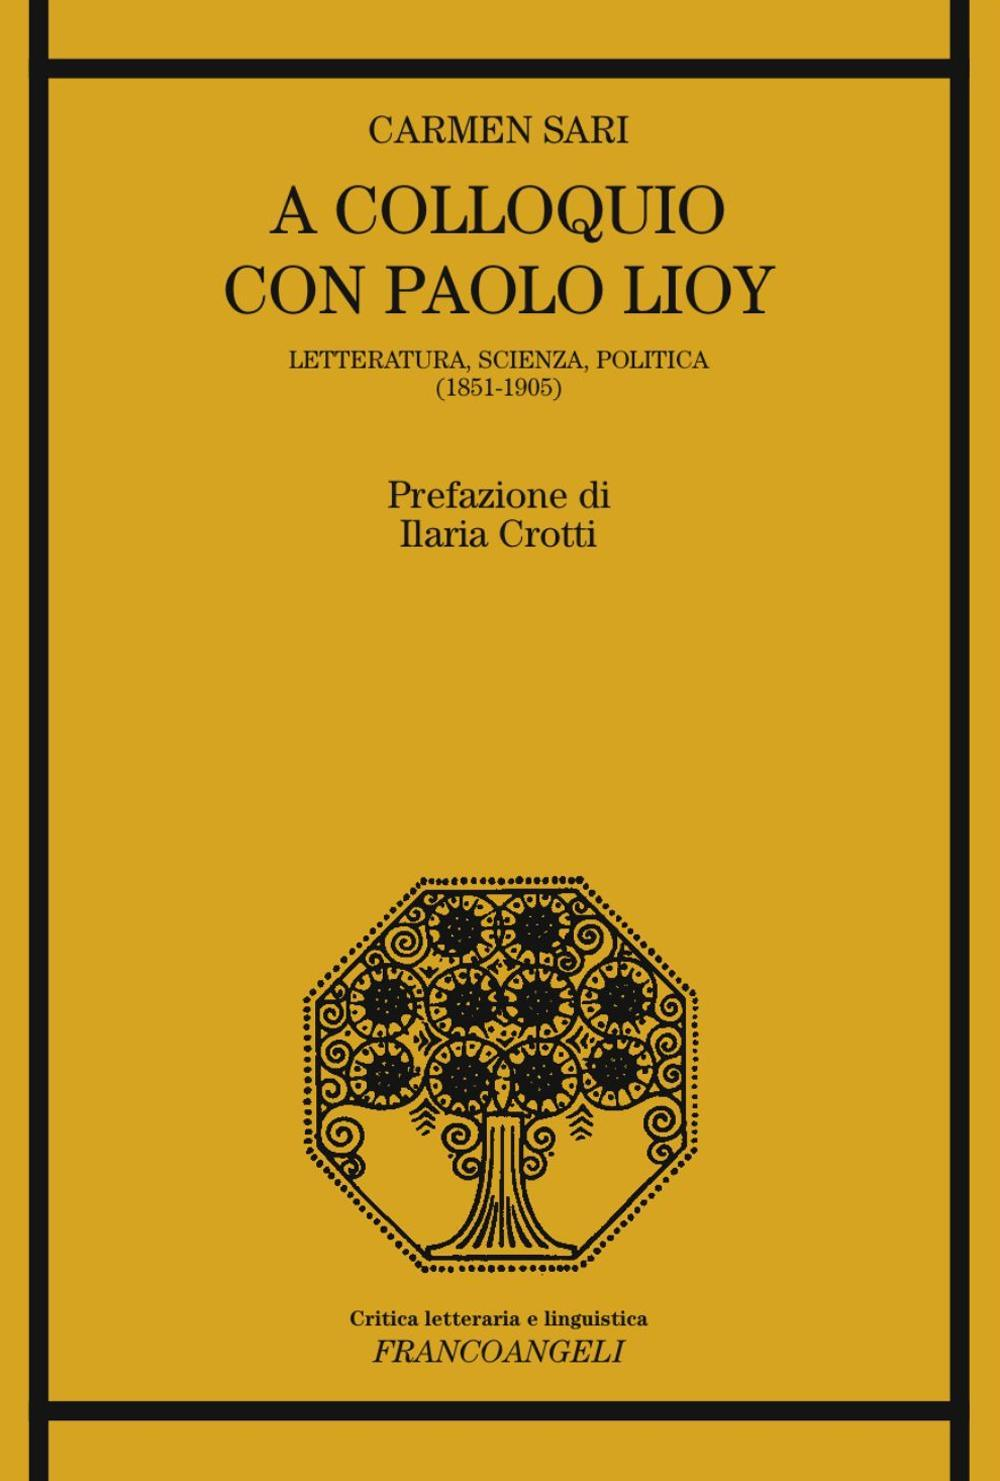 Image of A colloquio con Paolo Lioy. Letteratura, scienza, politica (1851-1905)